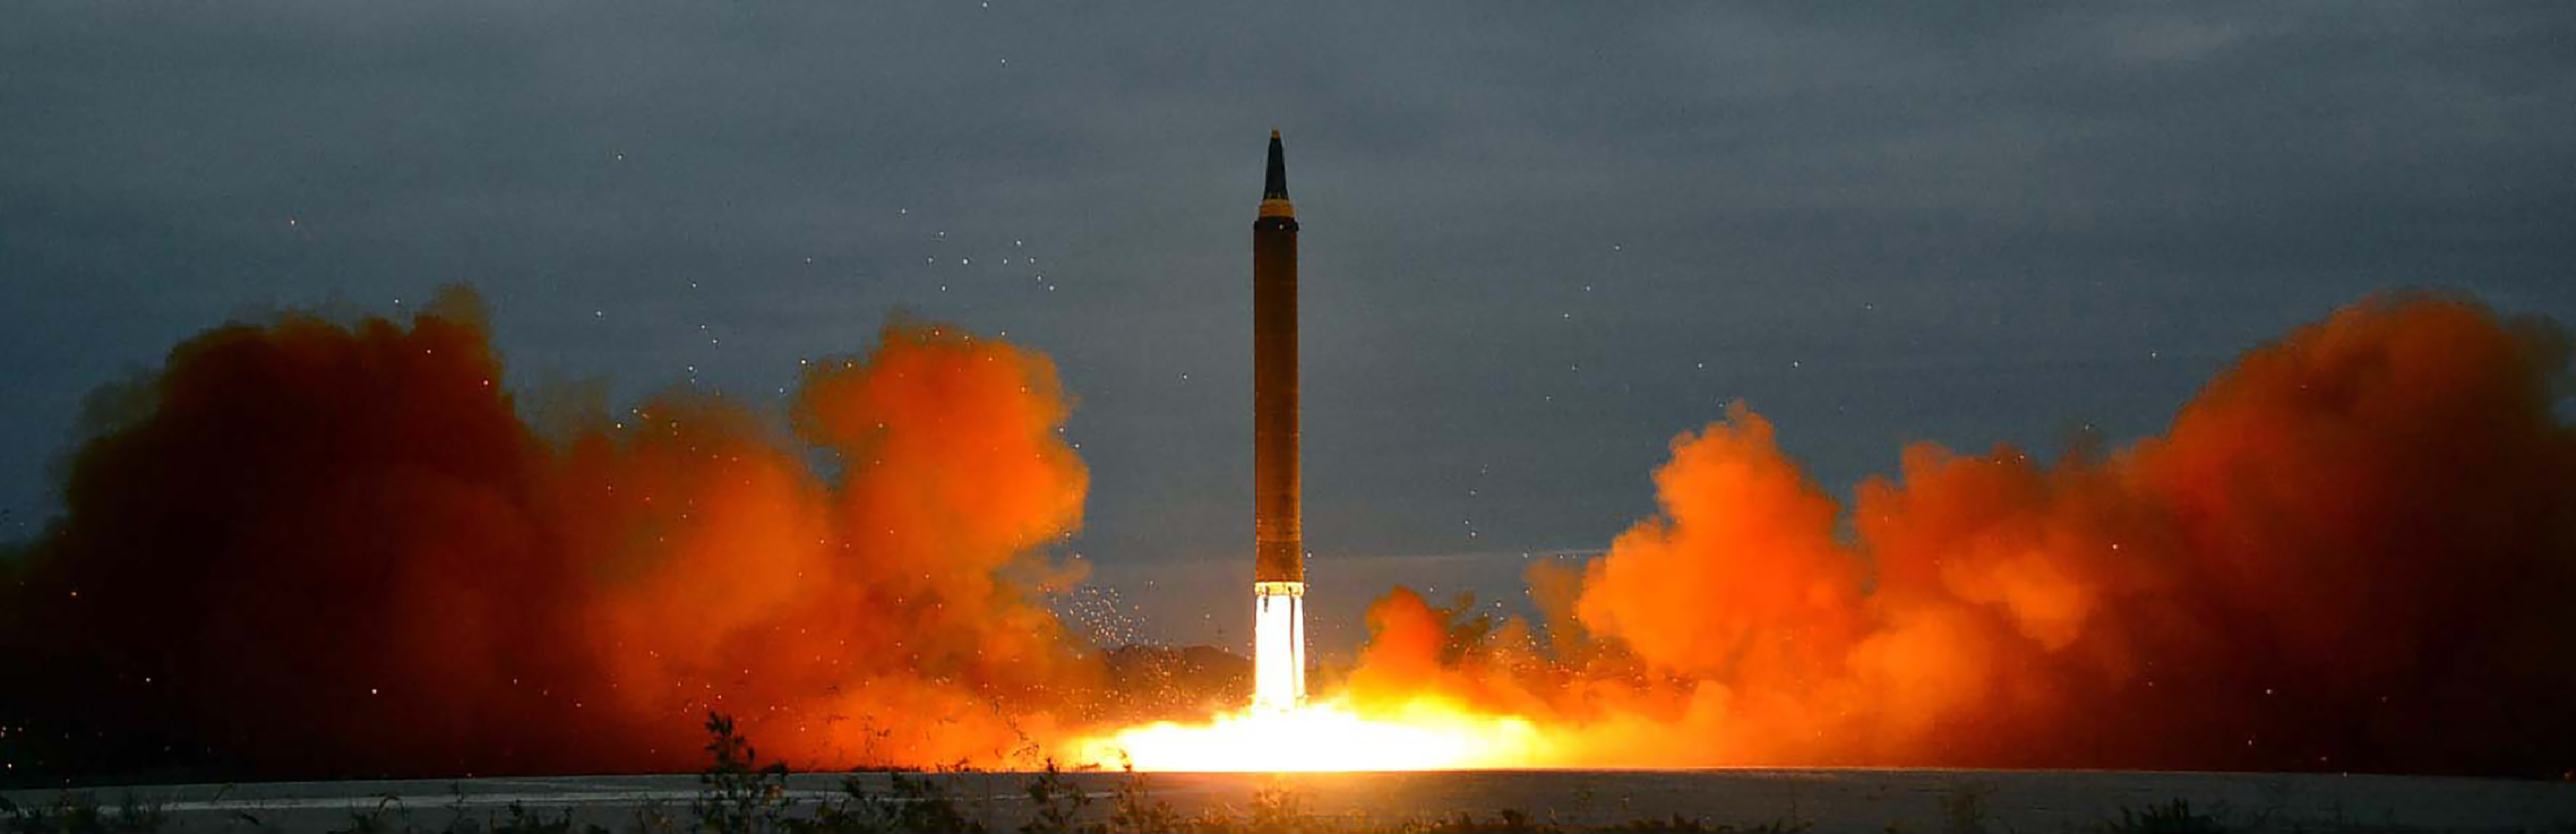 Lanzamiento de un misil balstico desde un lugar indeterminado de Corea del Norte.